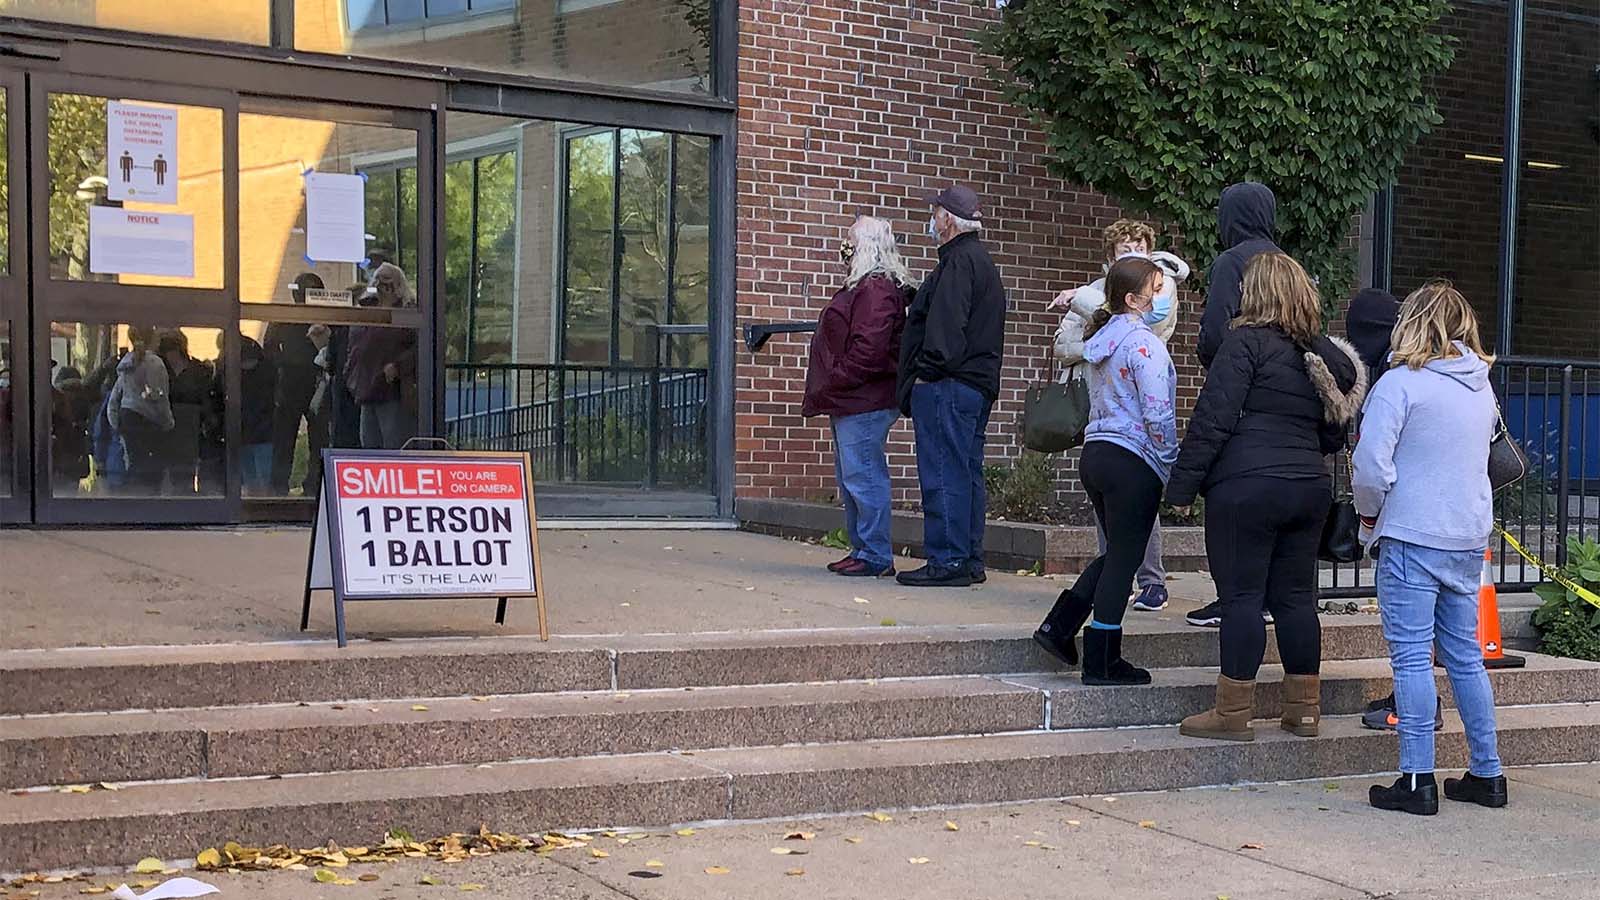 תור בקלפי להצבעה מוקדמת בפילדלפיה, פנסילבניה. (צילום: AP Photo/Mike Catalini)